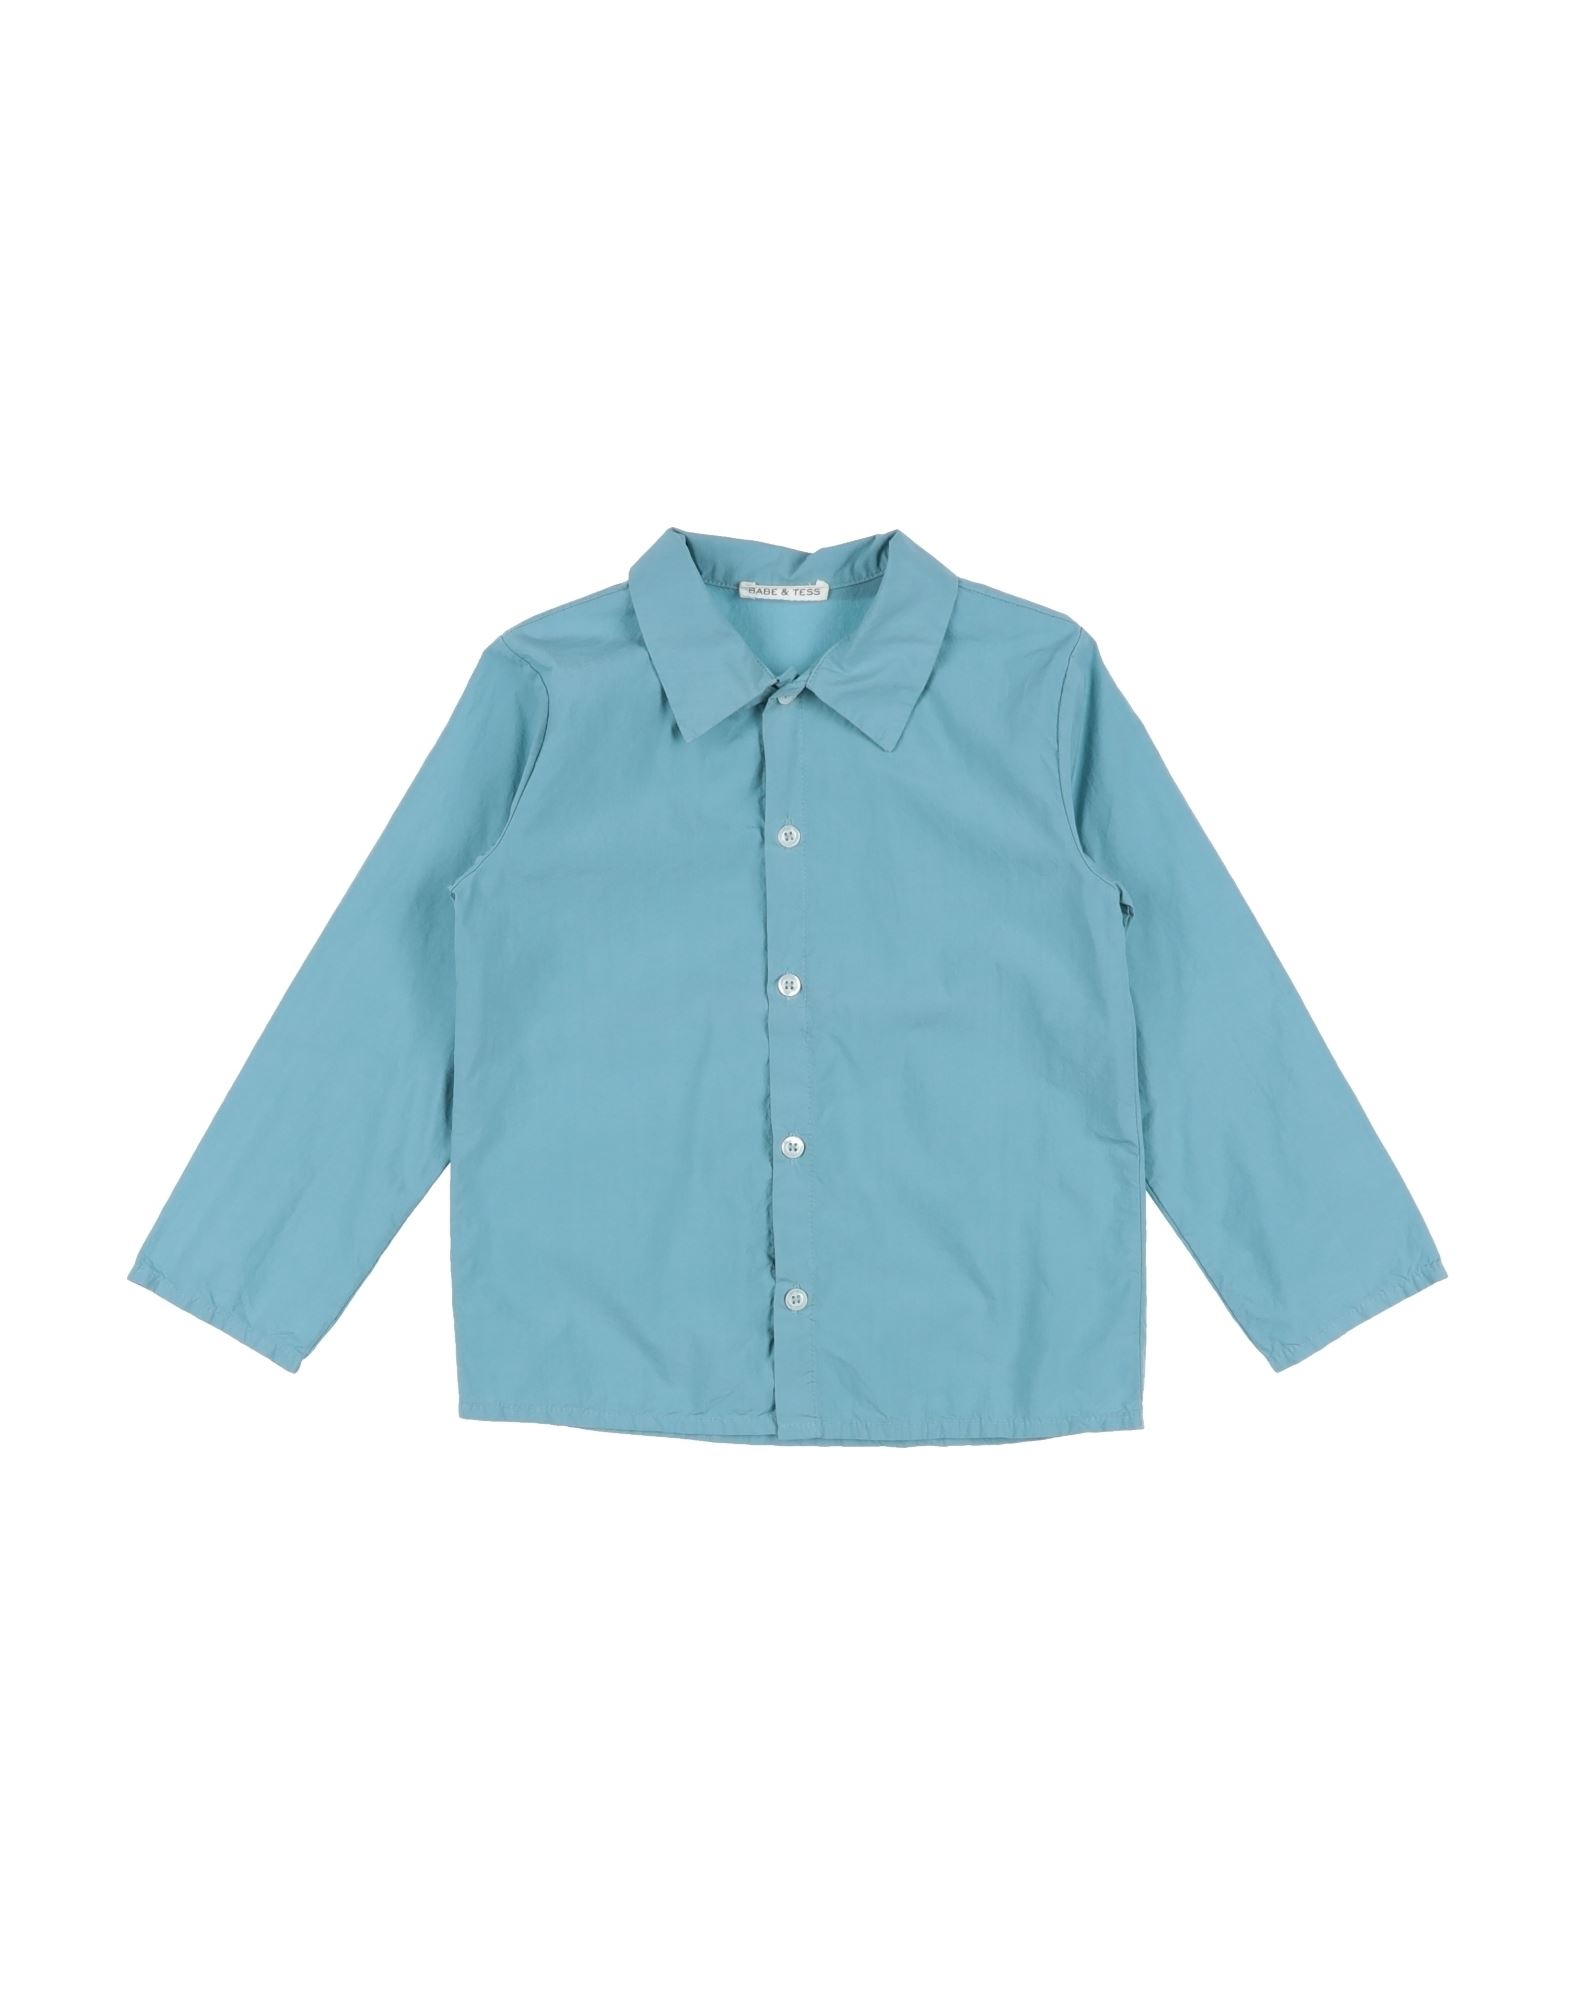 Babe And Tess Kids' Babe & Tess Toddler Boy Shirt Pastel Blue Size 5 Cotton